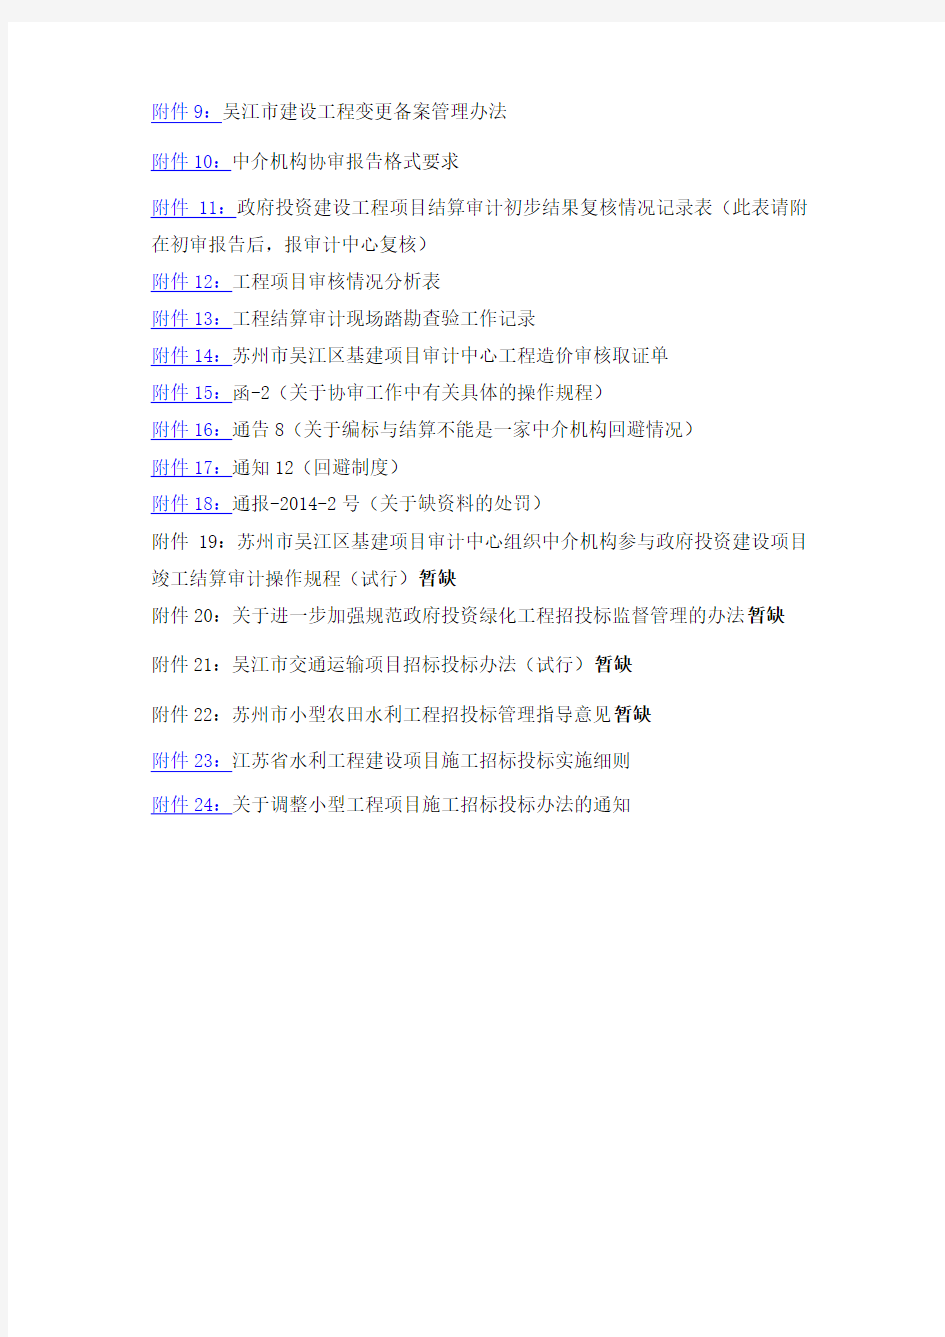 关于吴江审计中心流程及要求学习的会议纪要-2014年5月8日